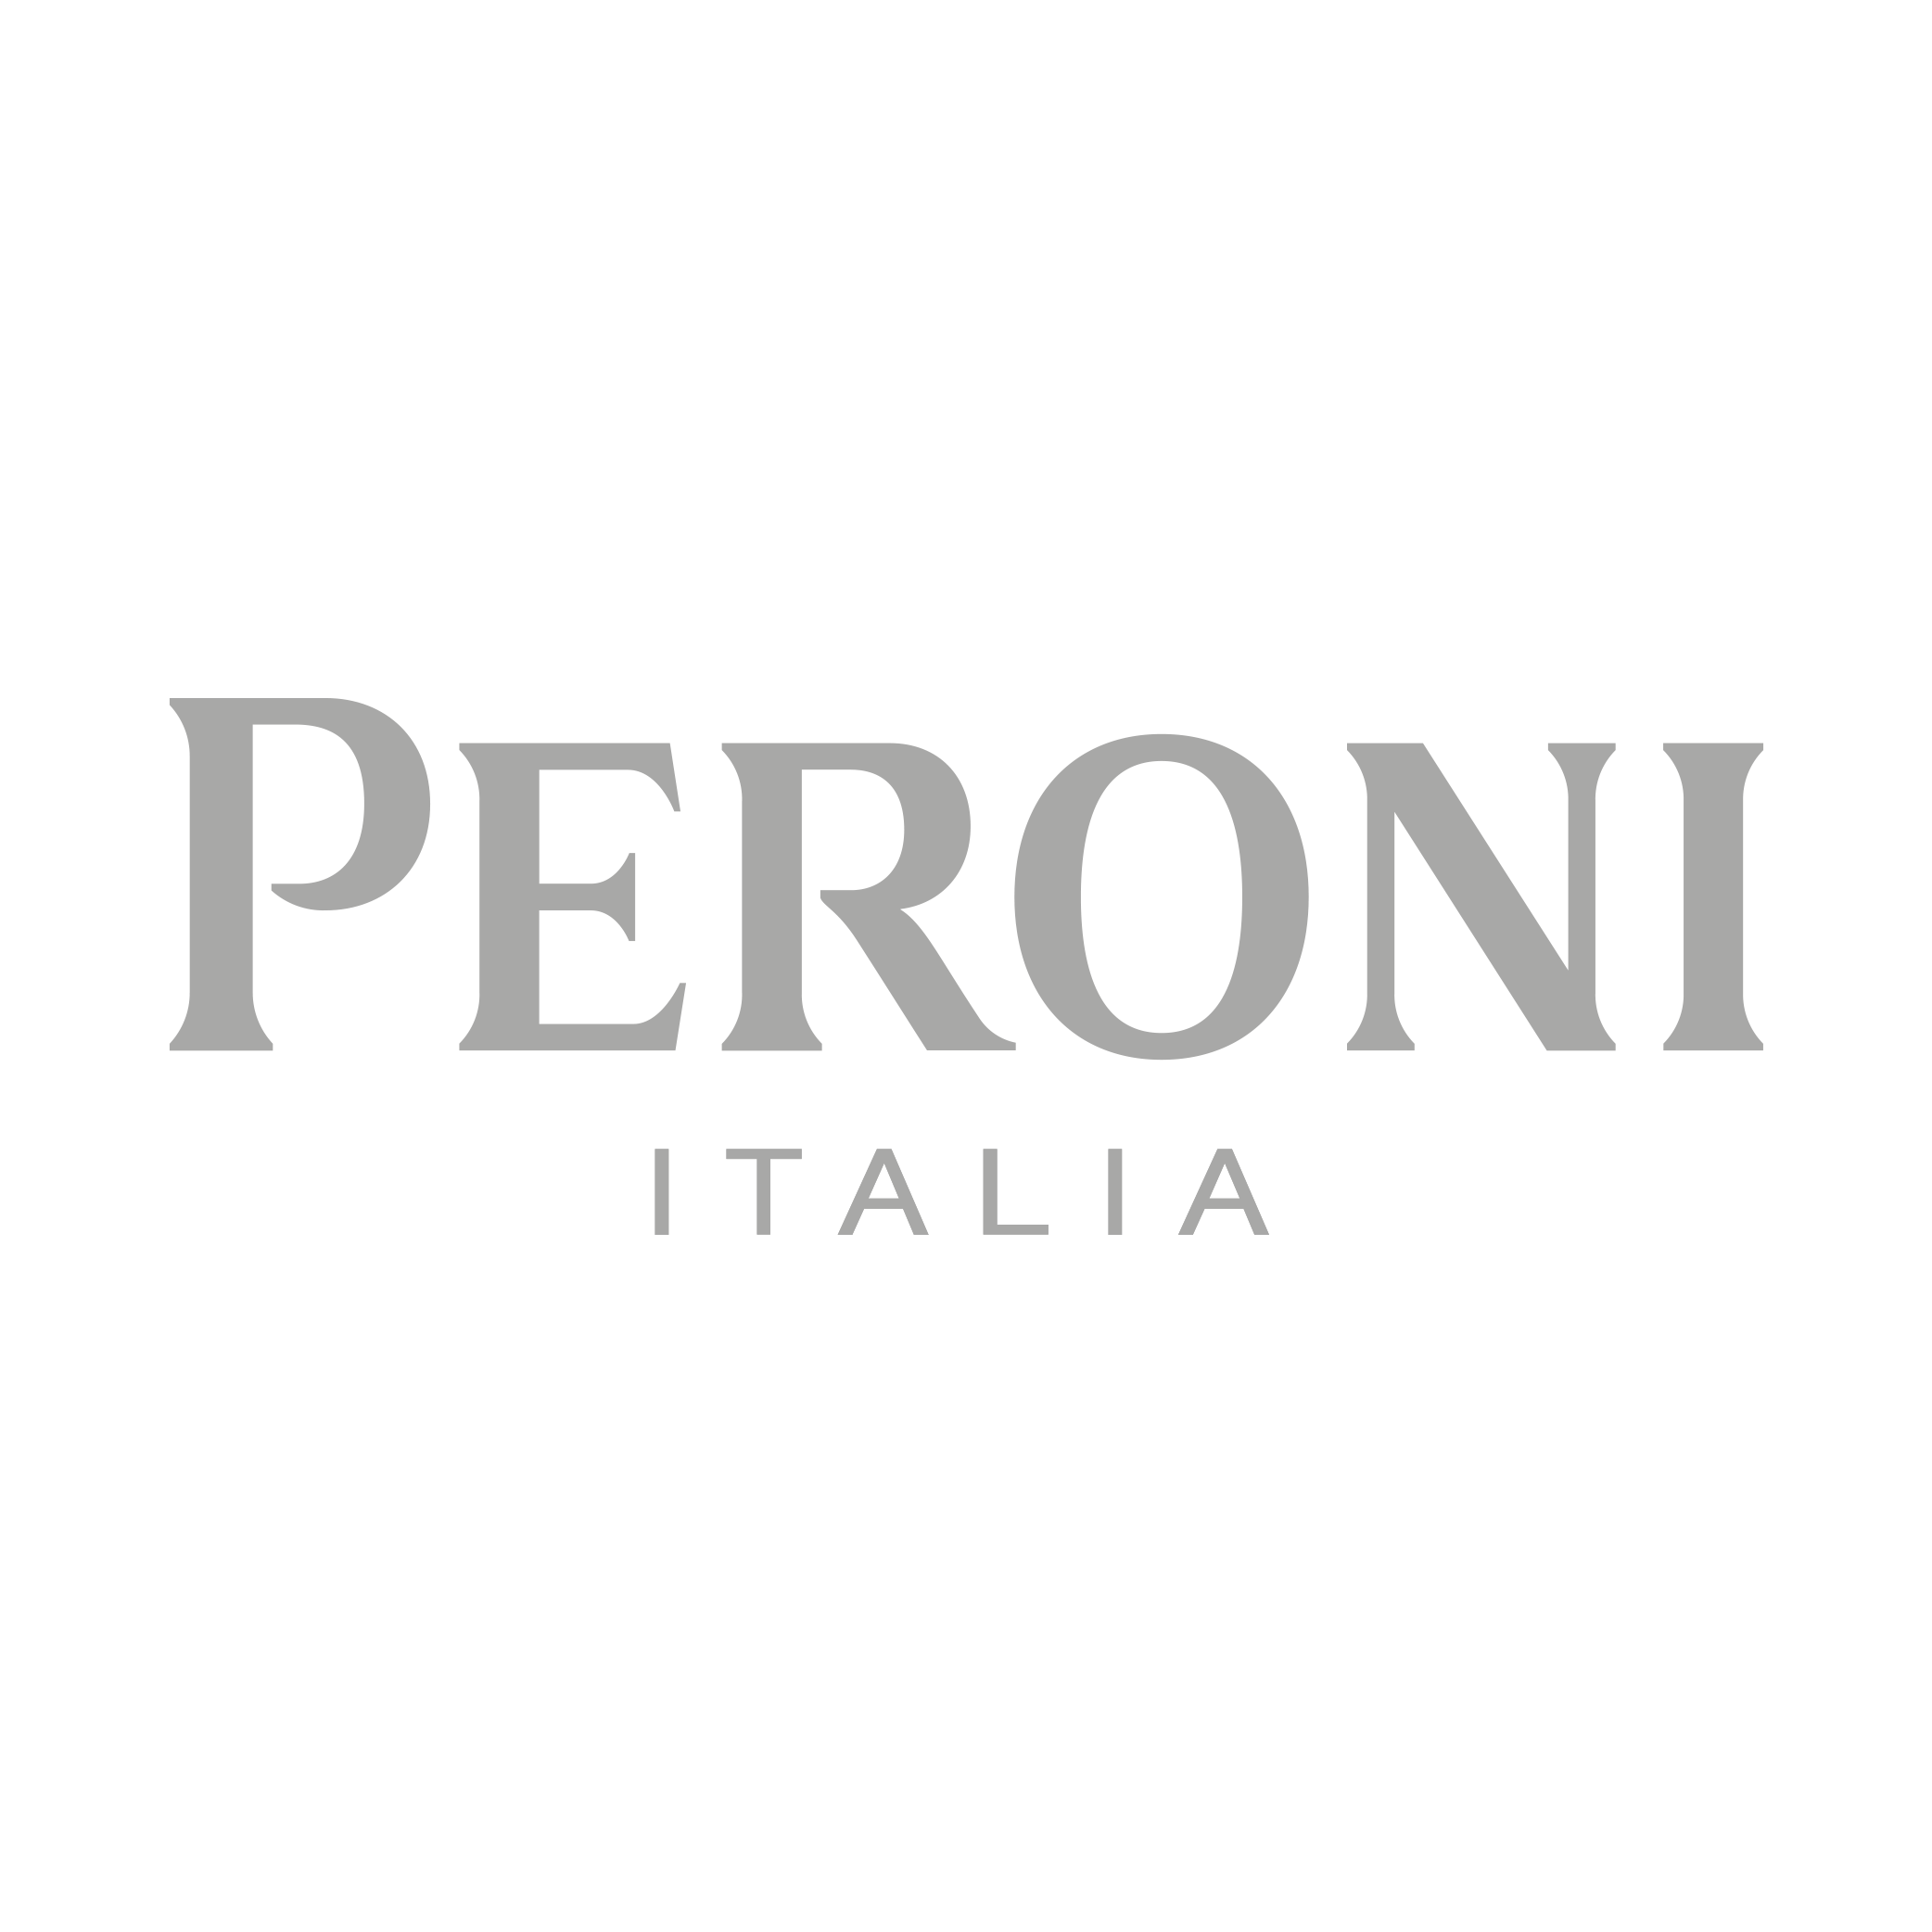 Peroni Italia